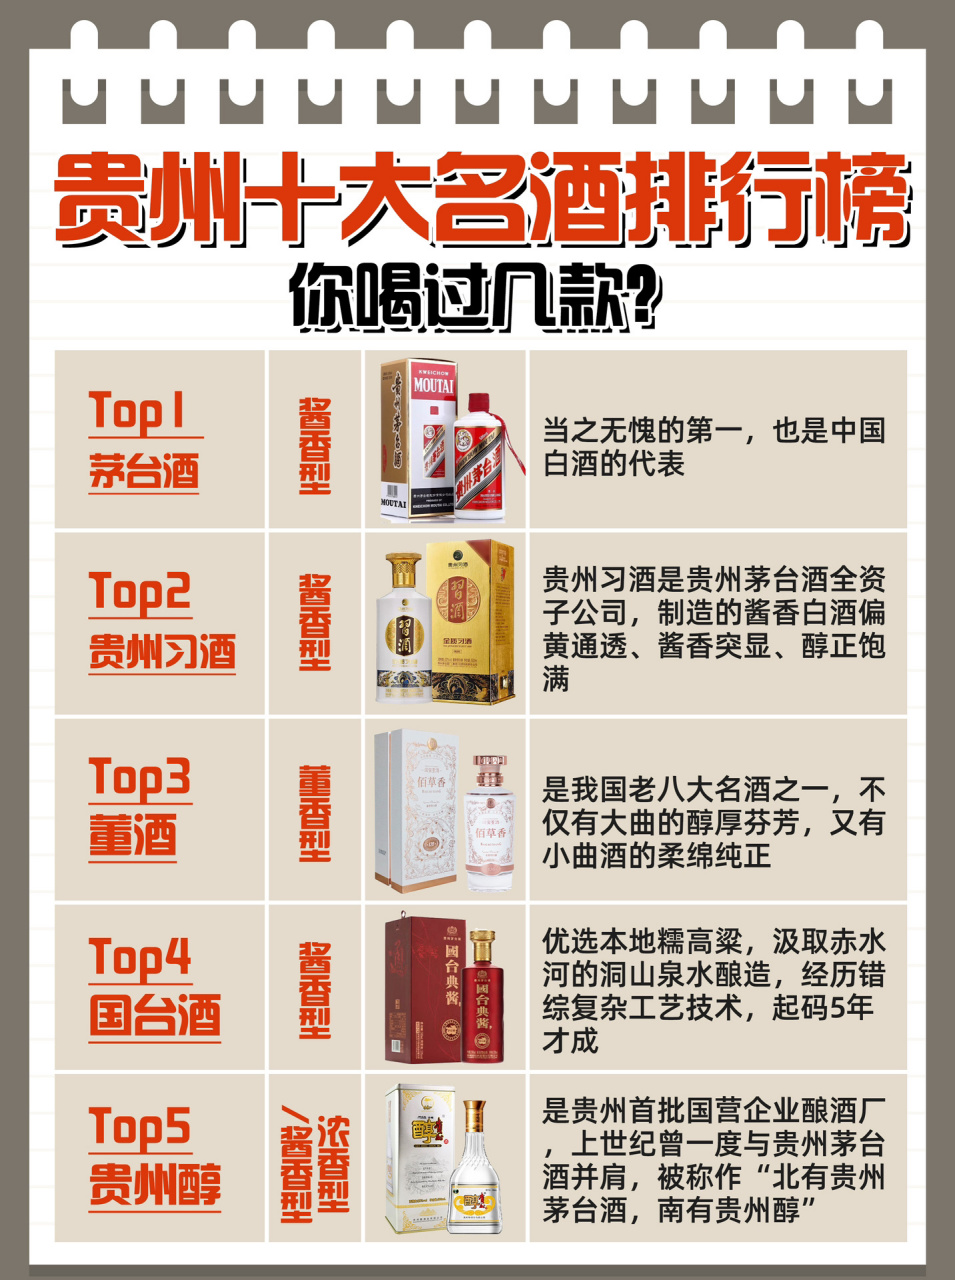 贵州10大名酒排行榜73你喝过几款6315 中国酱酒看贵州,不是说着